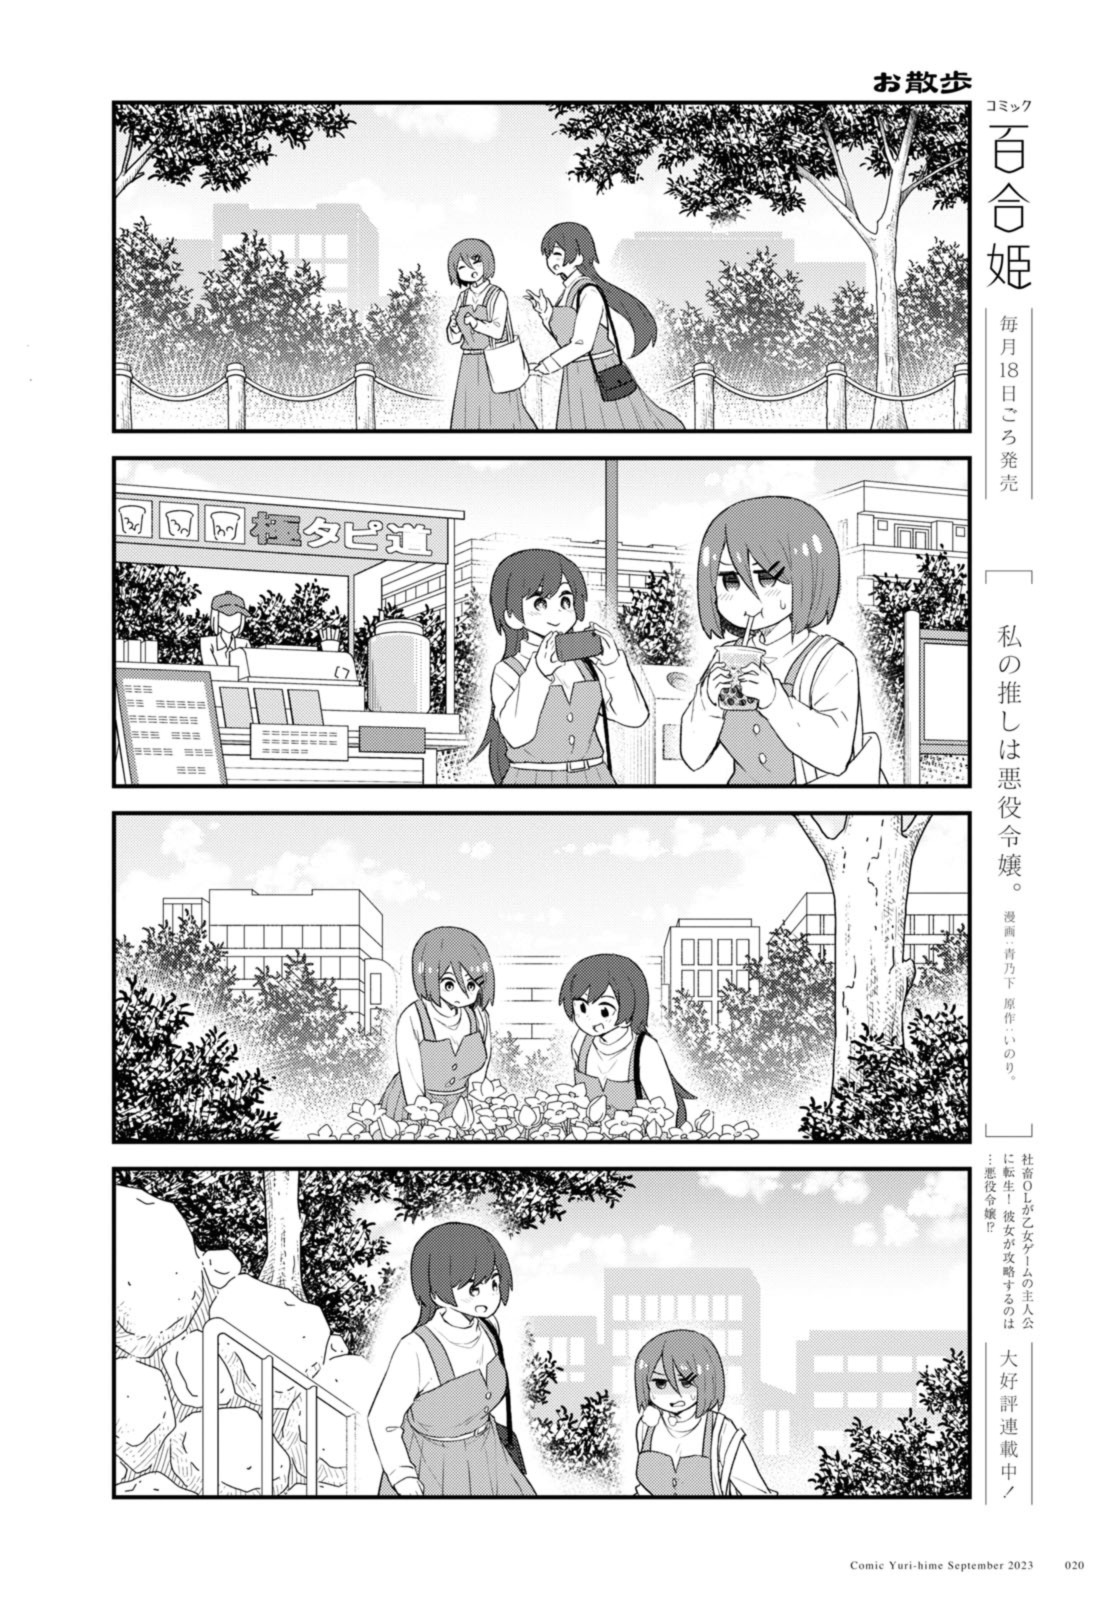 Watashi ni Tenshi ga Maiorita! - Chapter 108.2 - Page 4